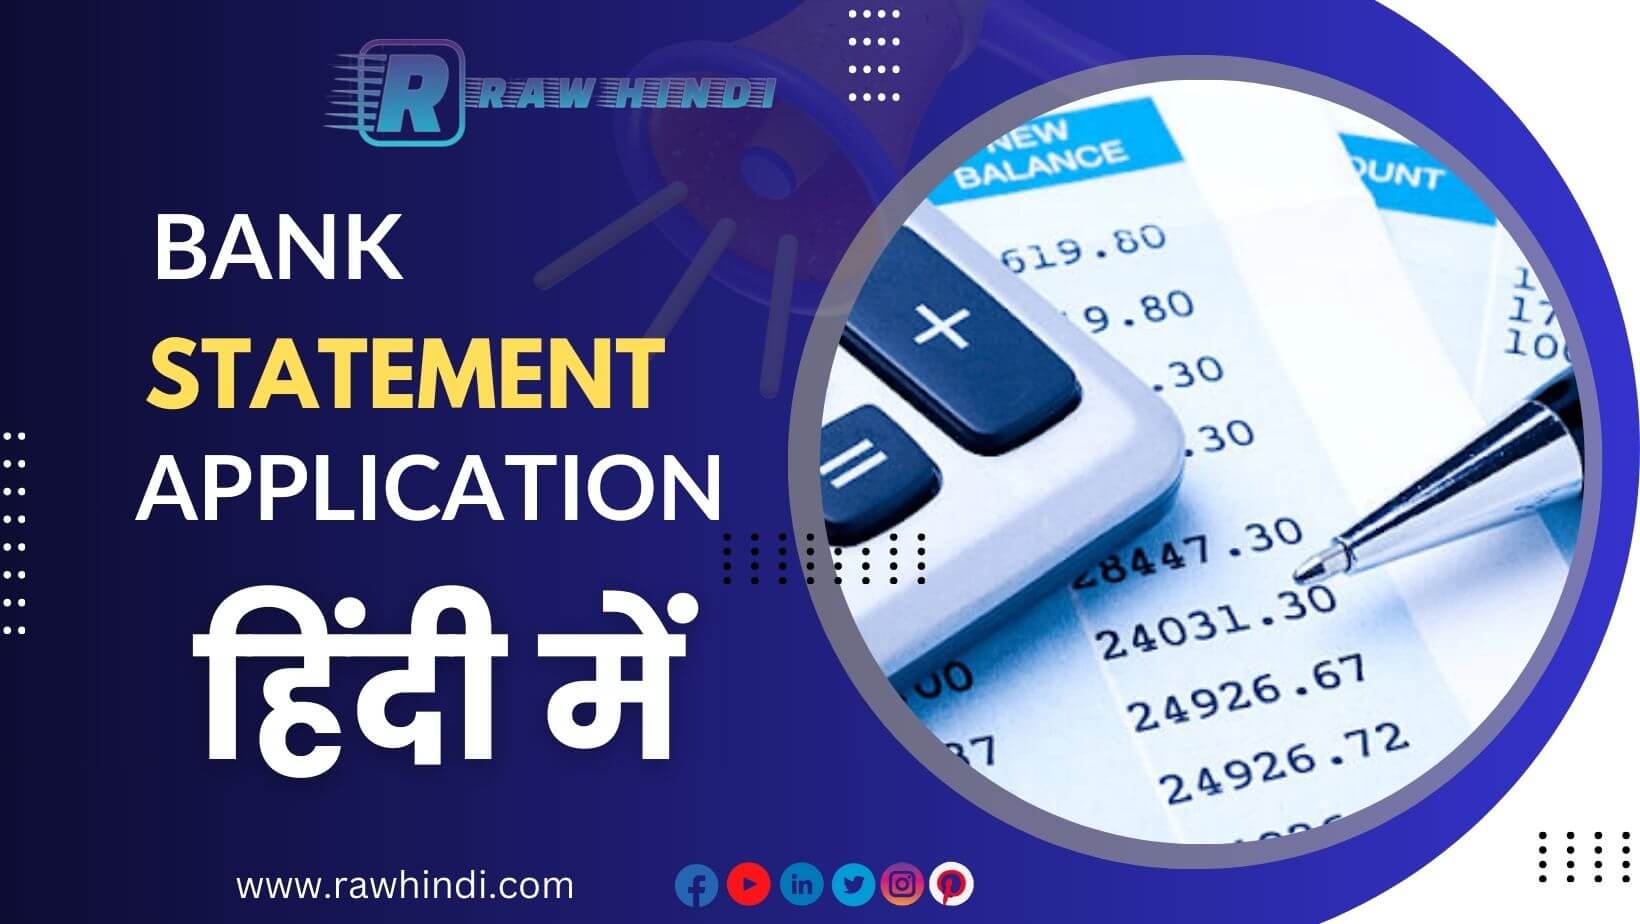 Bank Statement Application in Hindi | बैंक स्टेटमेंट के लिए एप्लीकेशन हिंदी में कैसे लिखे 👇